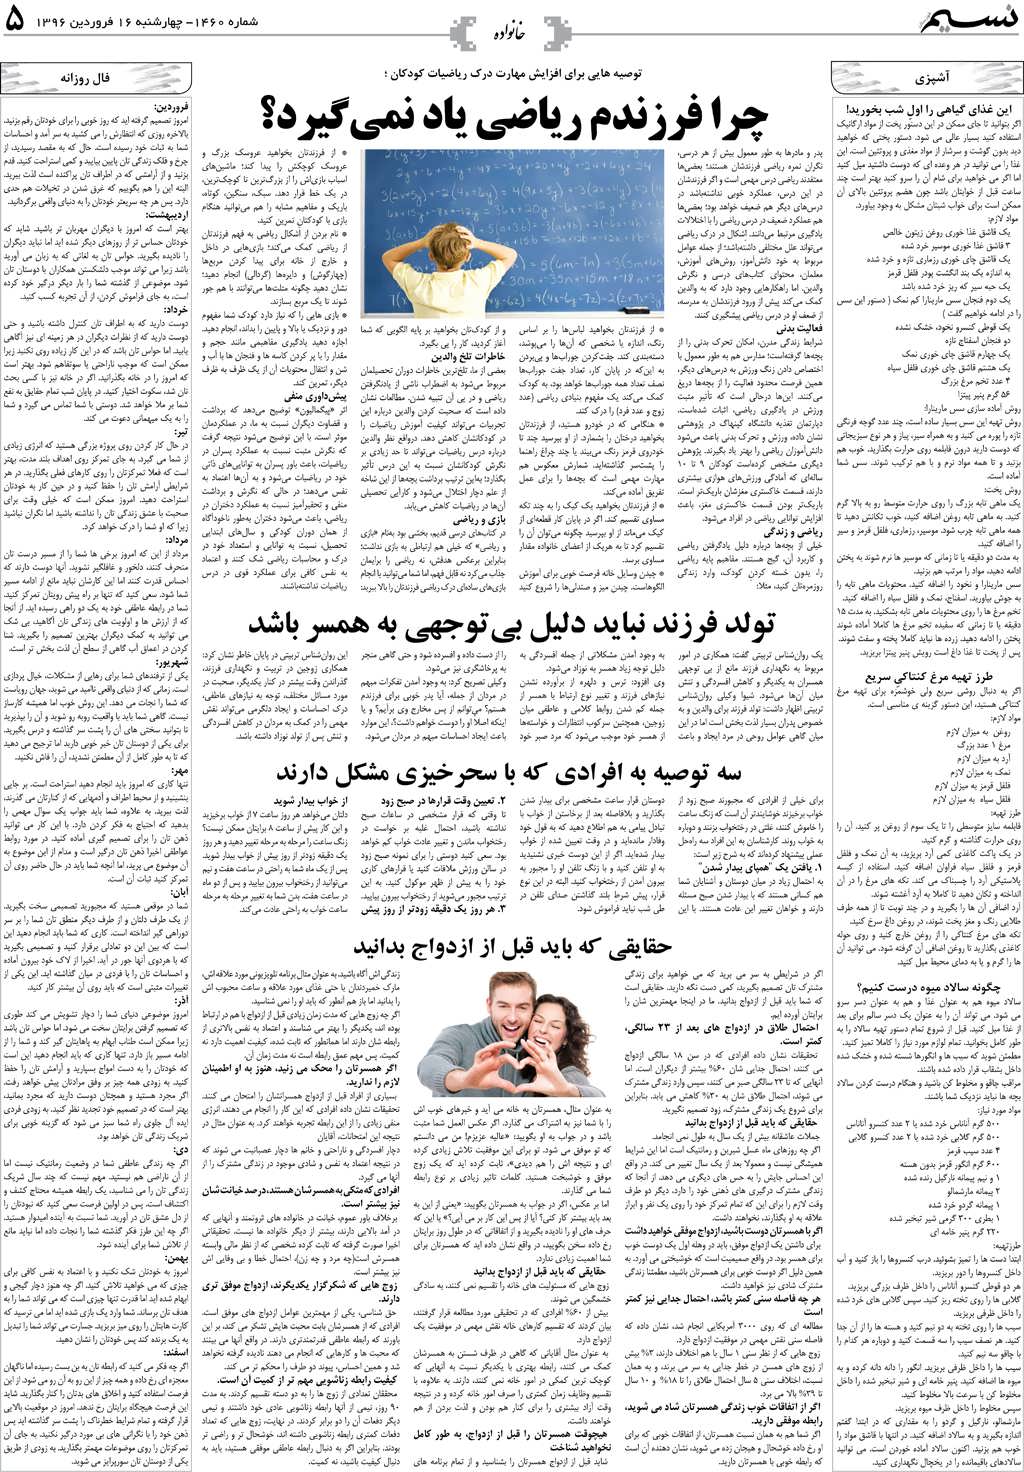 صفحه خانواده روزنامه نسیم شماره 1460